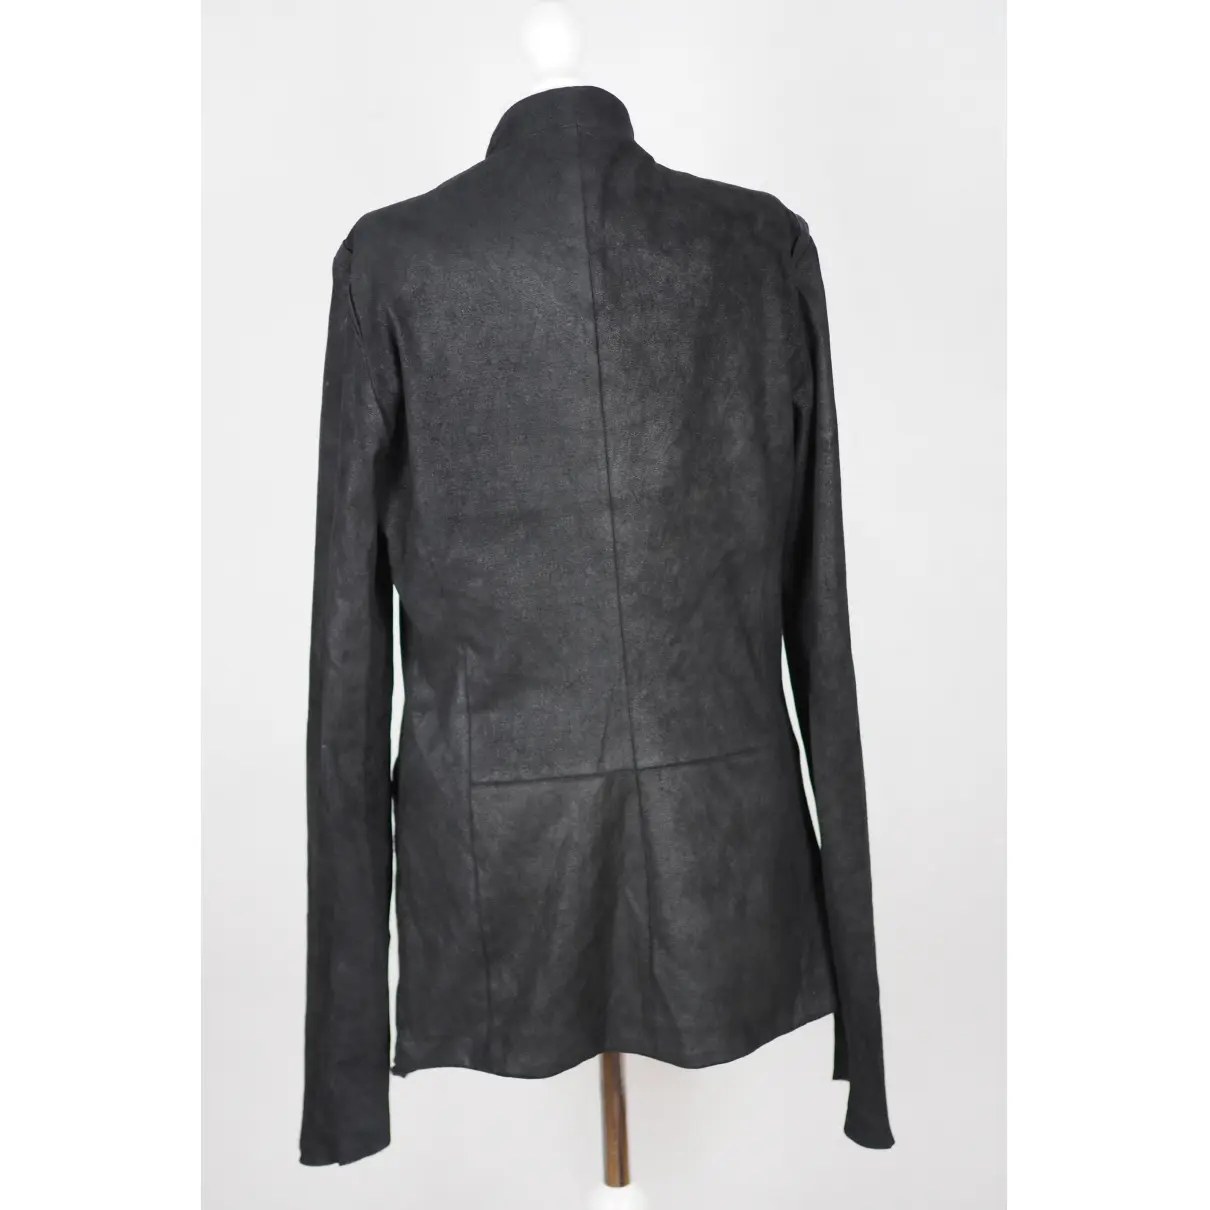 Buy Isabel Benenato Leather biker jacket online